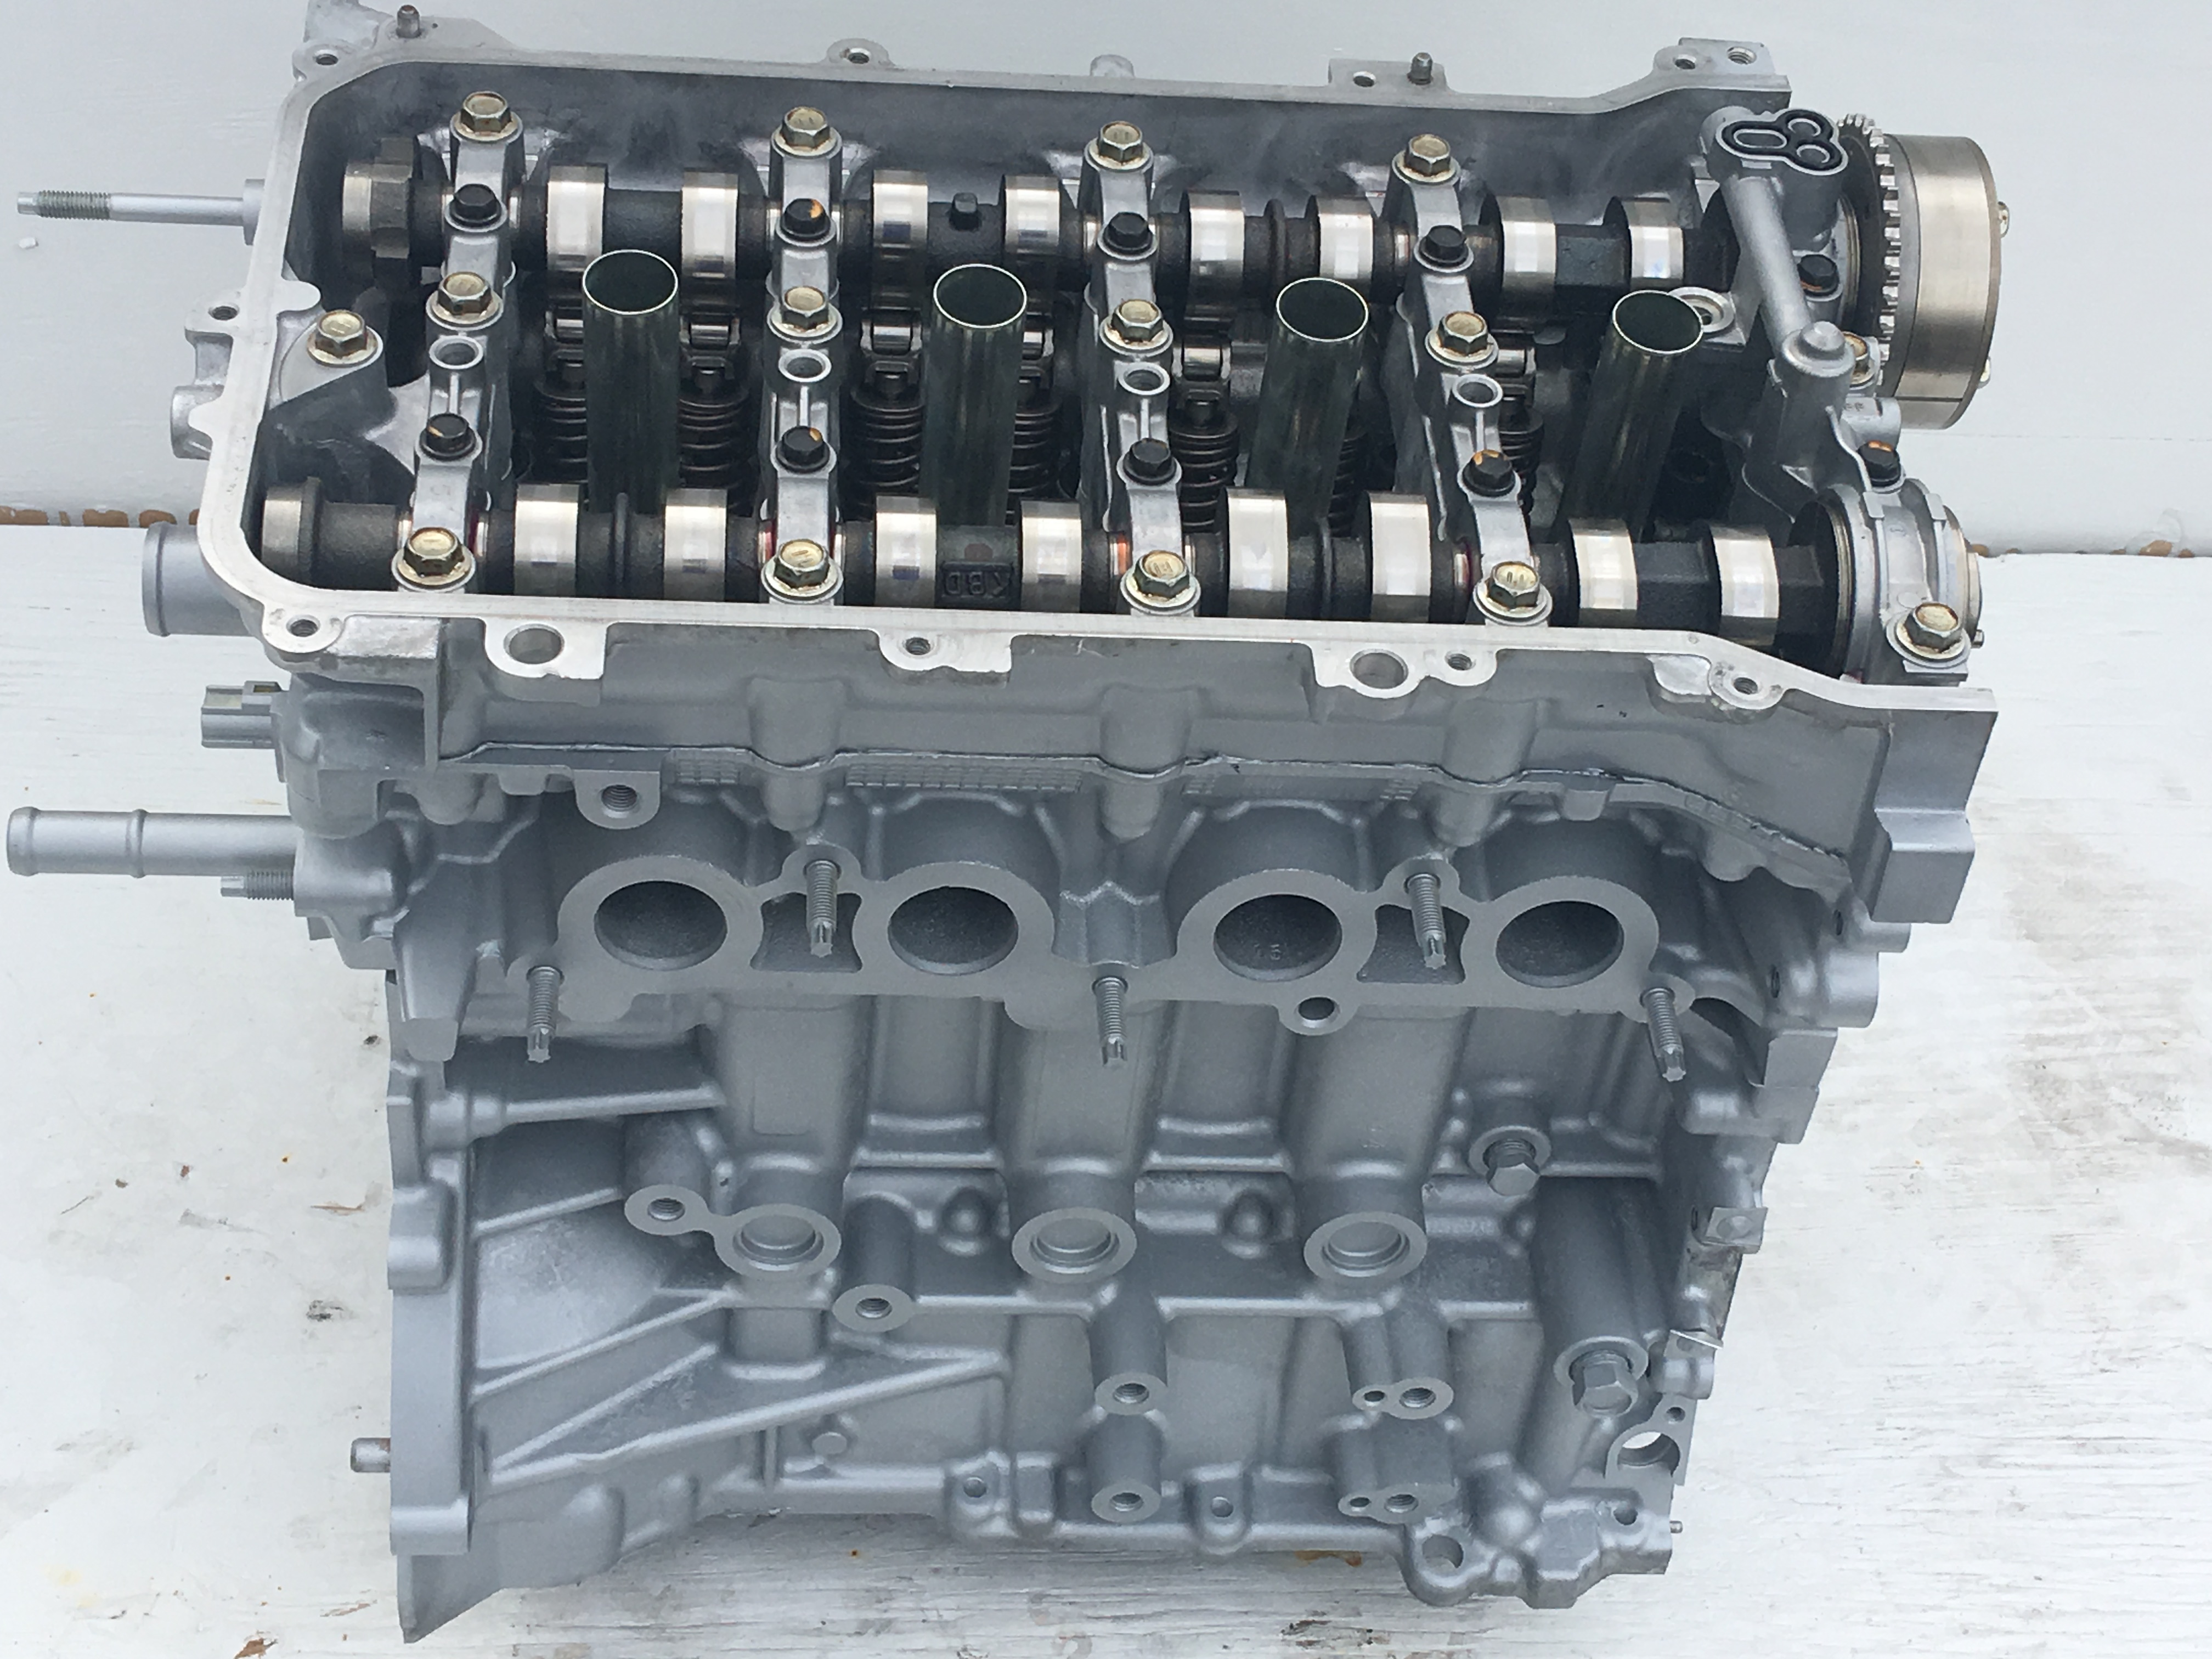 Toyota 2ZR FXE rebuilt engine